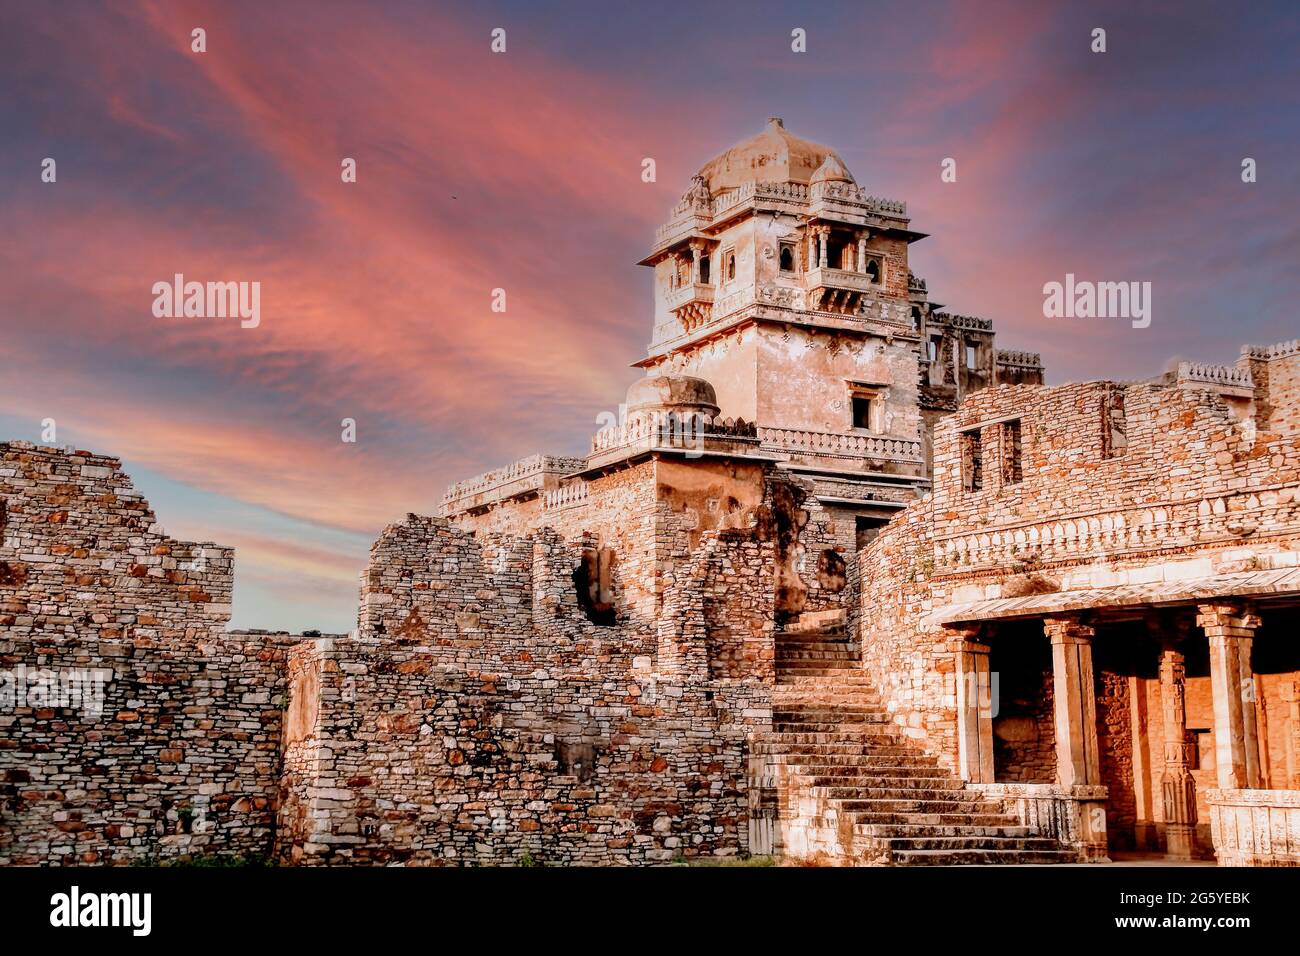 Le fort de Chittorgarh est l'un des plus grands forts de l'Inde. C'est un site classé au patrimoine mondial de l'UNESCO. Le fort était la capitale de Mewar. Banque D'Images